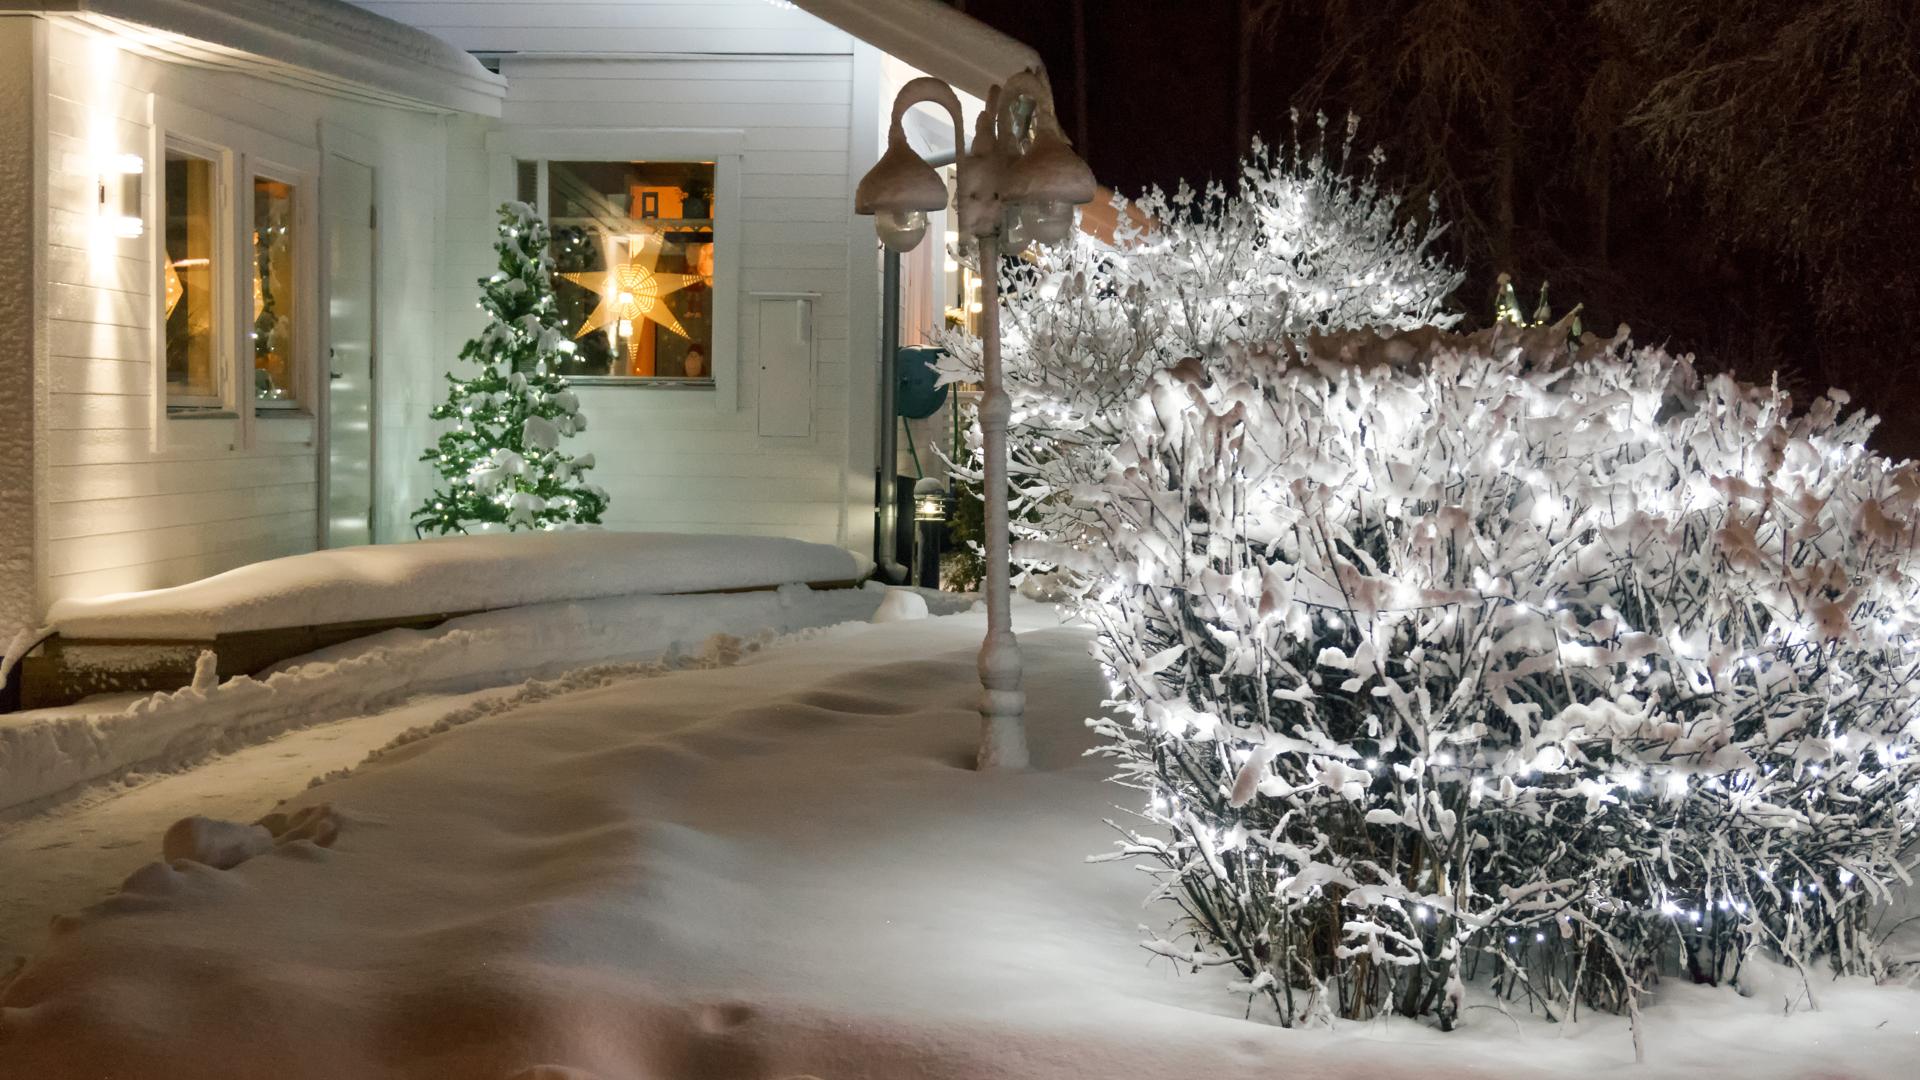 En bild tagen utifrån på en del av ett vitt hus där man ser adventsstjärnor i fönstren. Utanför är det snö och på altanen står en adventsgran. Man skymtar även en upplyst trädgård.